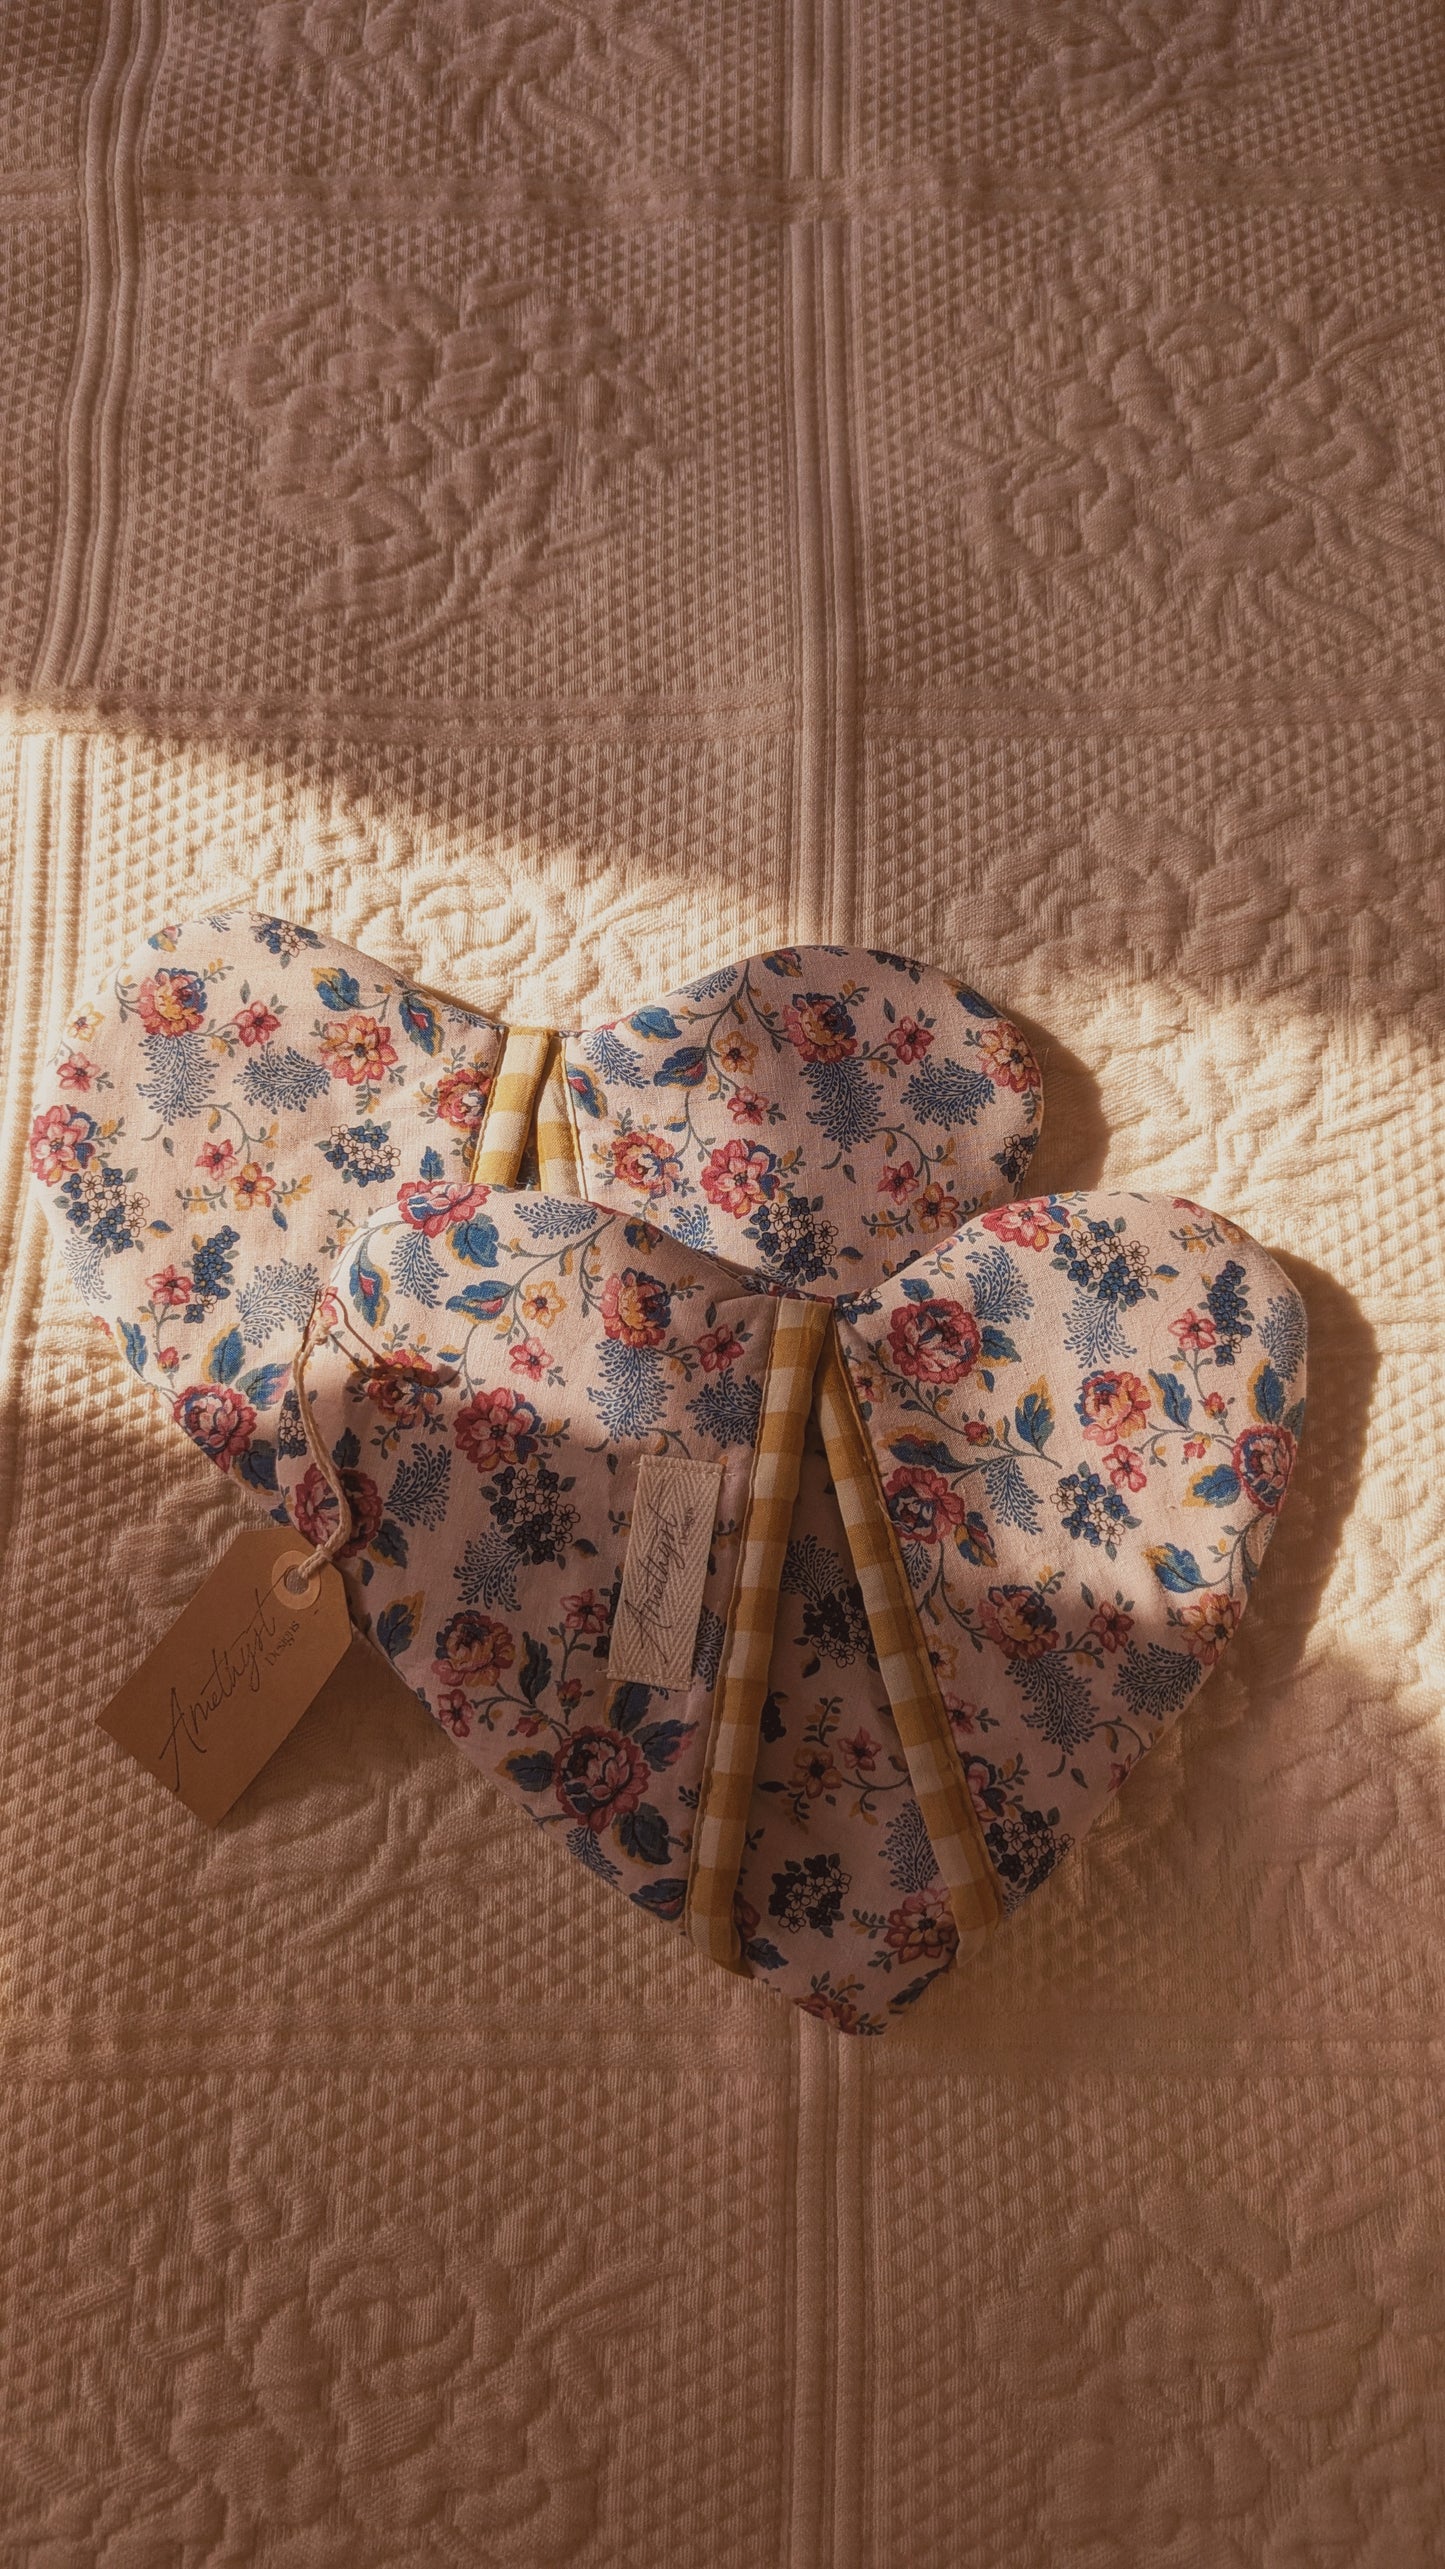 Handmade heart shaped oven mitts (pair) - primrose